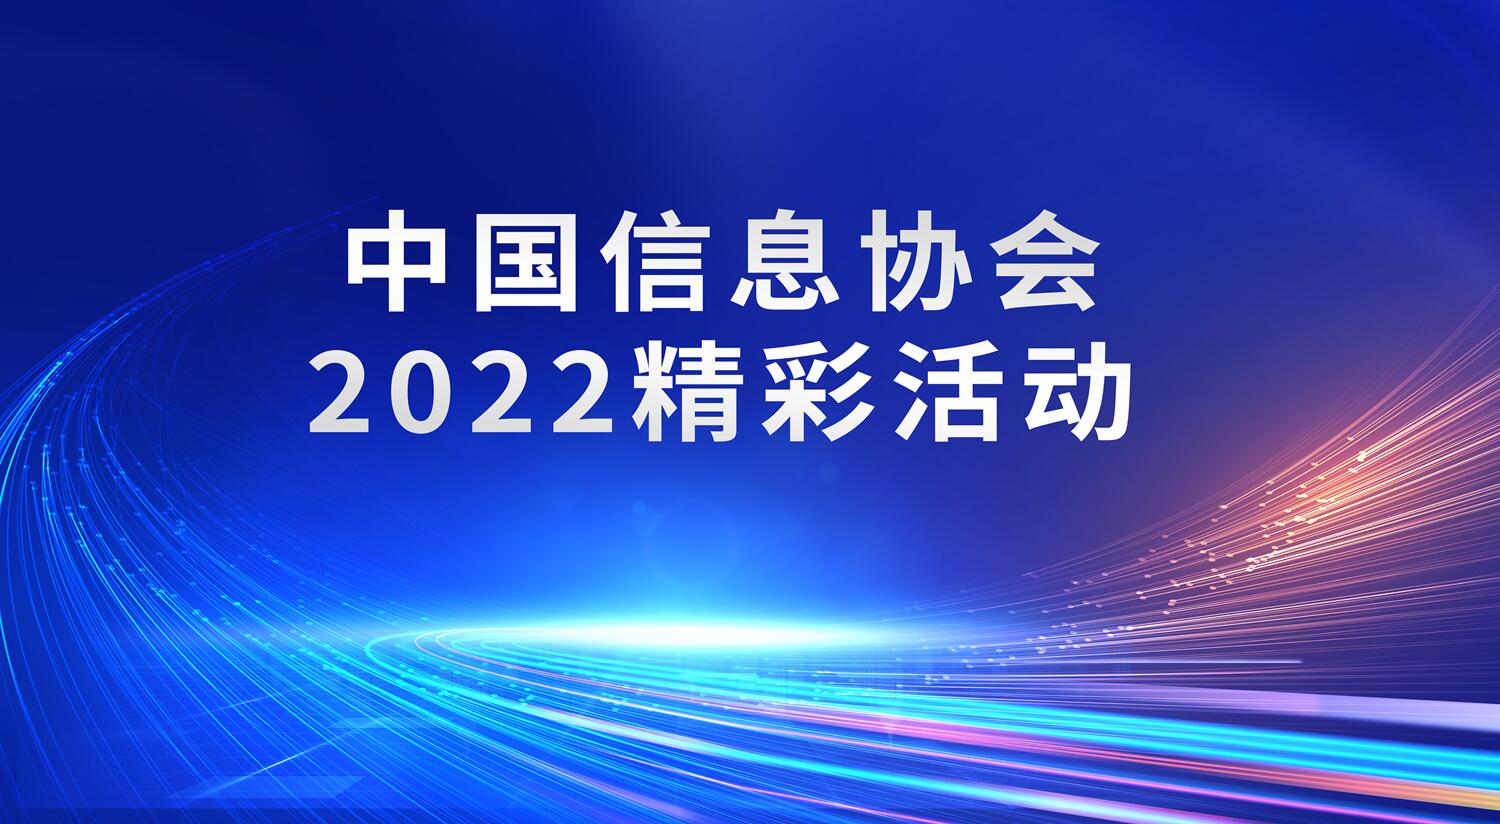 中國信息協會2022精彩活動